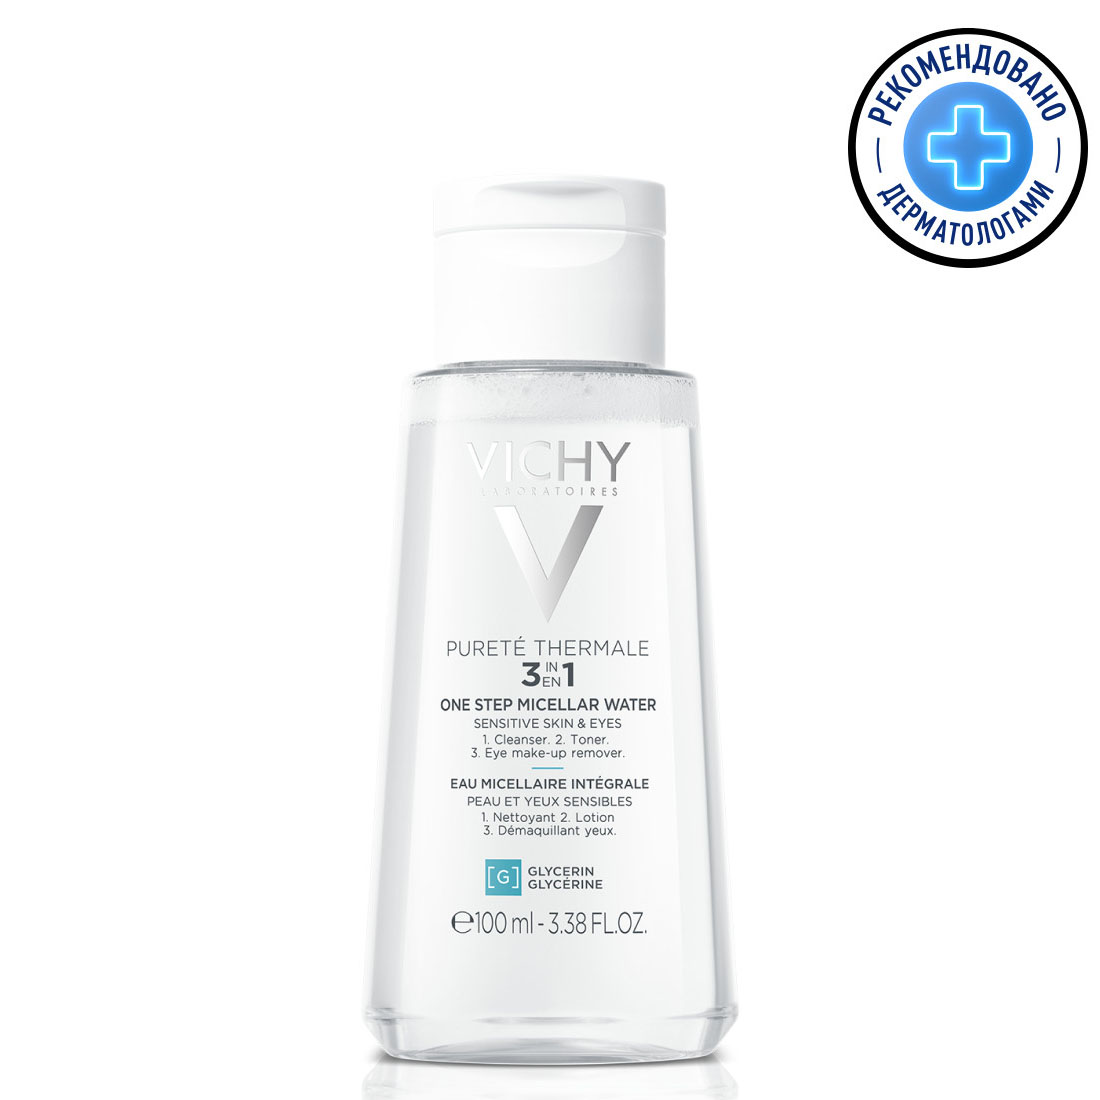 Vichy Мицеллярная вода универсальная для чувствительной кожи лица и вокруг глаз, 100 мл (Vichy, Purete Thermal) цена и фото